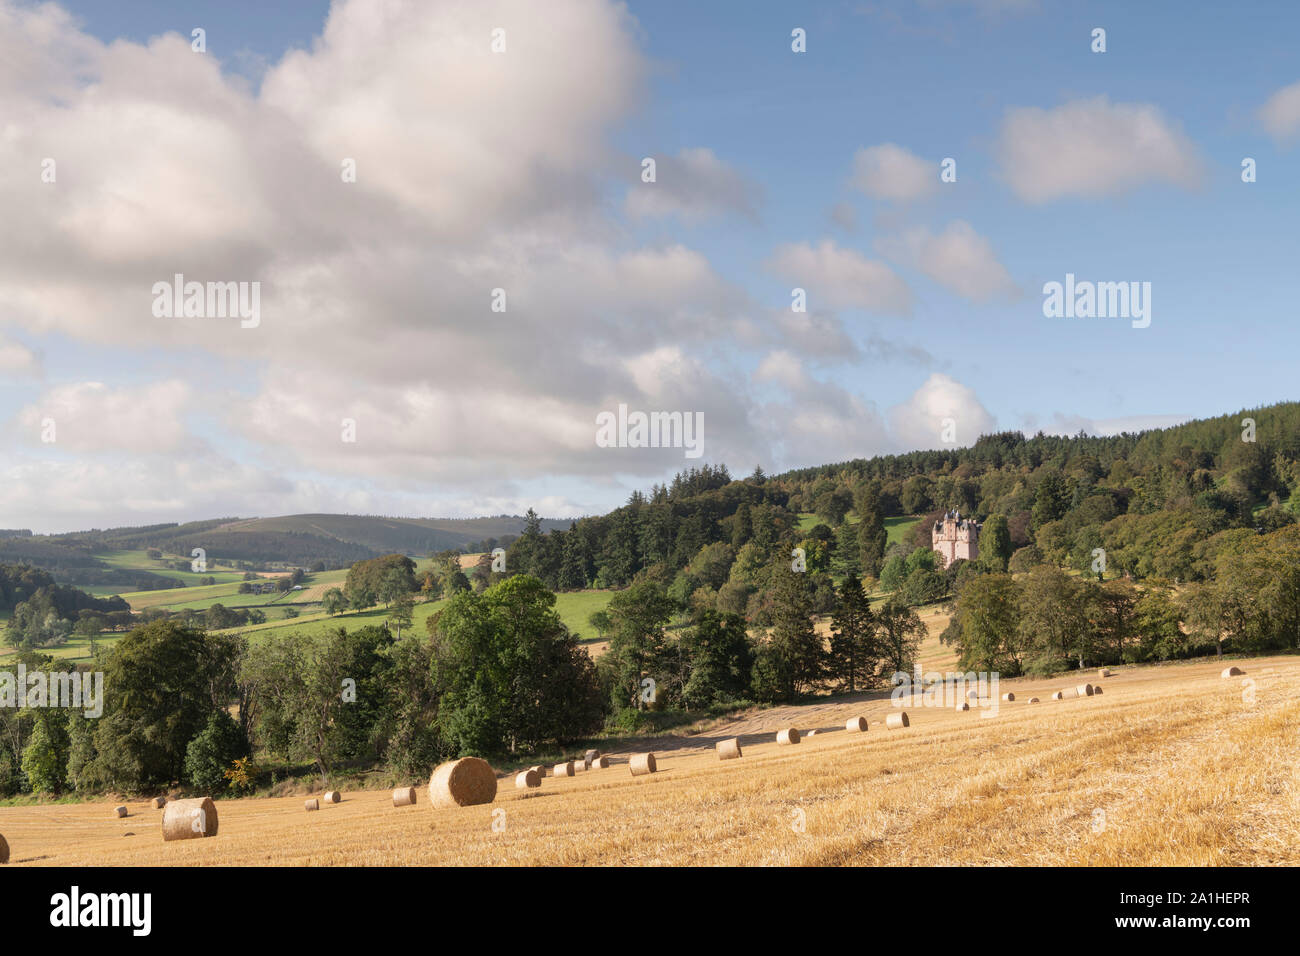 Une Vue sur campagne vallonnée, dans l'Aberdeenshire, avec un champ de bottes de paille et de Craigievar Castle niché sur une colline boisée surplombant les terres agricoles Banque D'Images